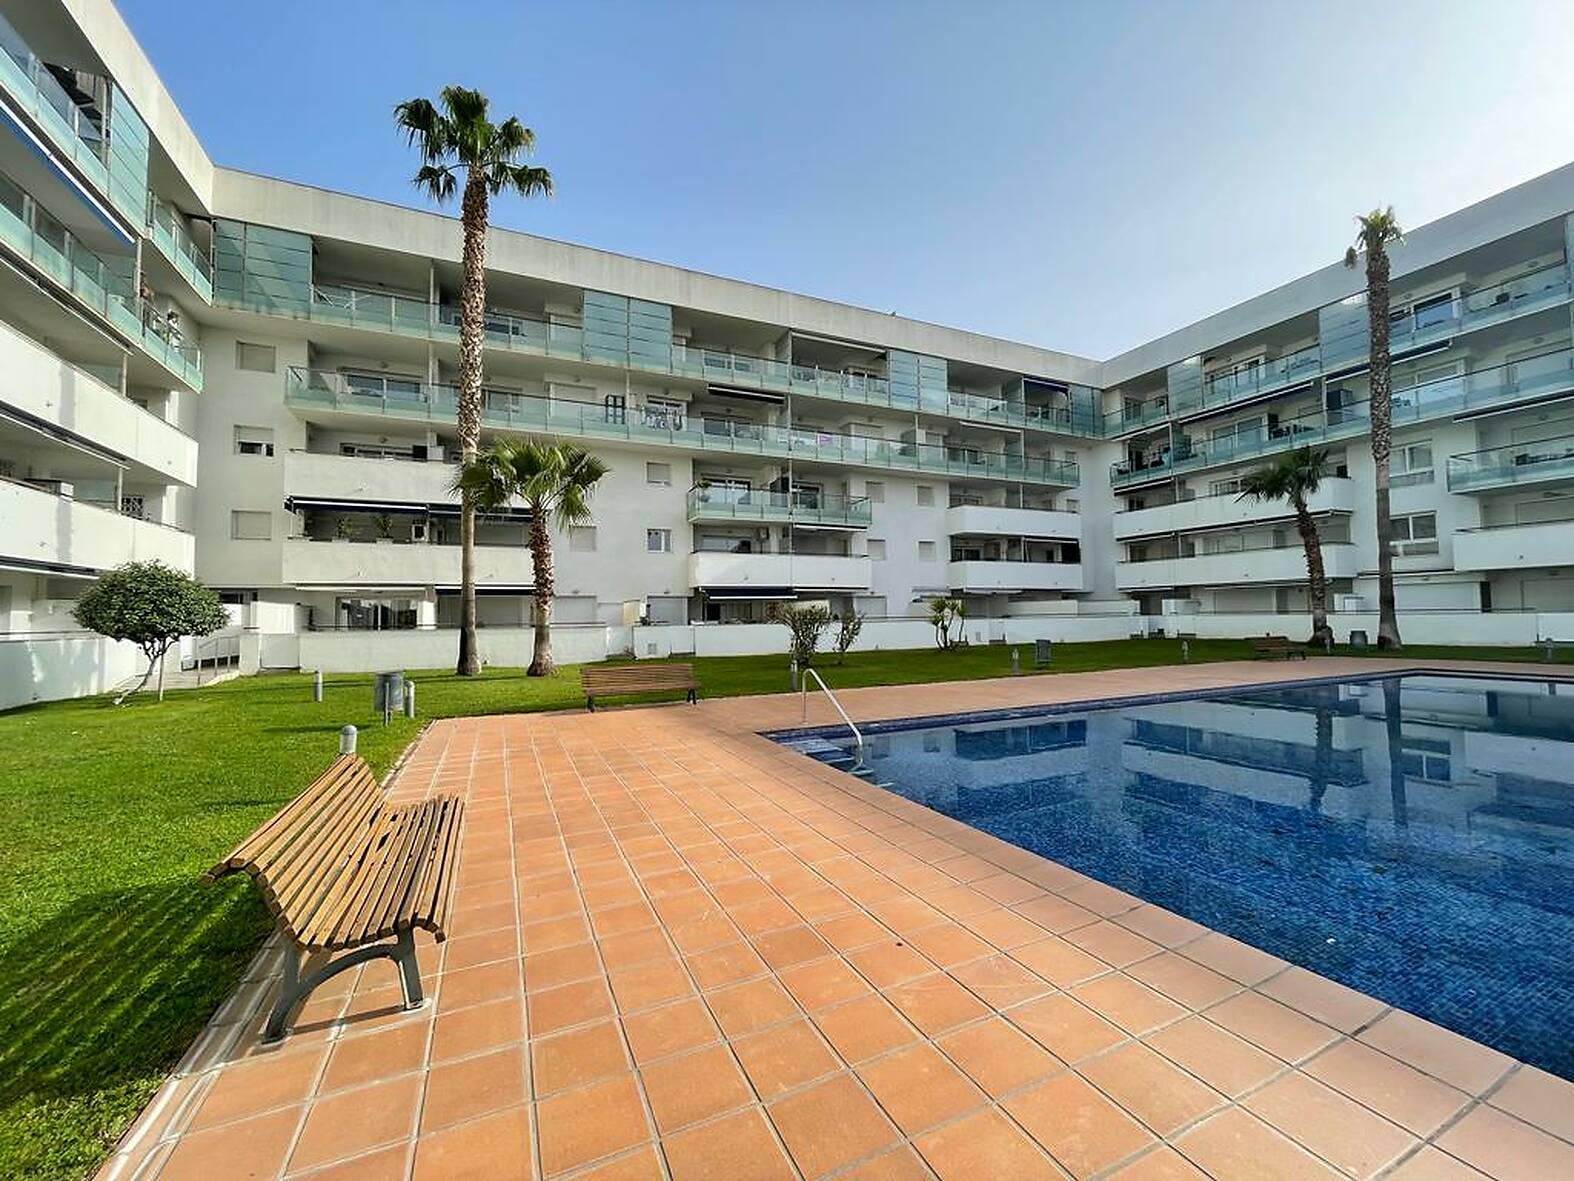 Apartment with swimming pool for sale in Rosas - Santa Margarita